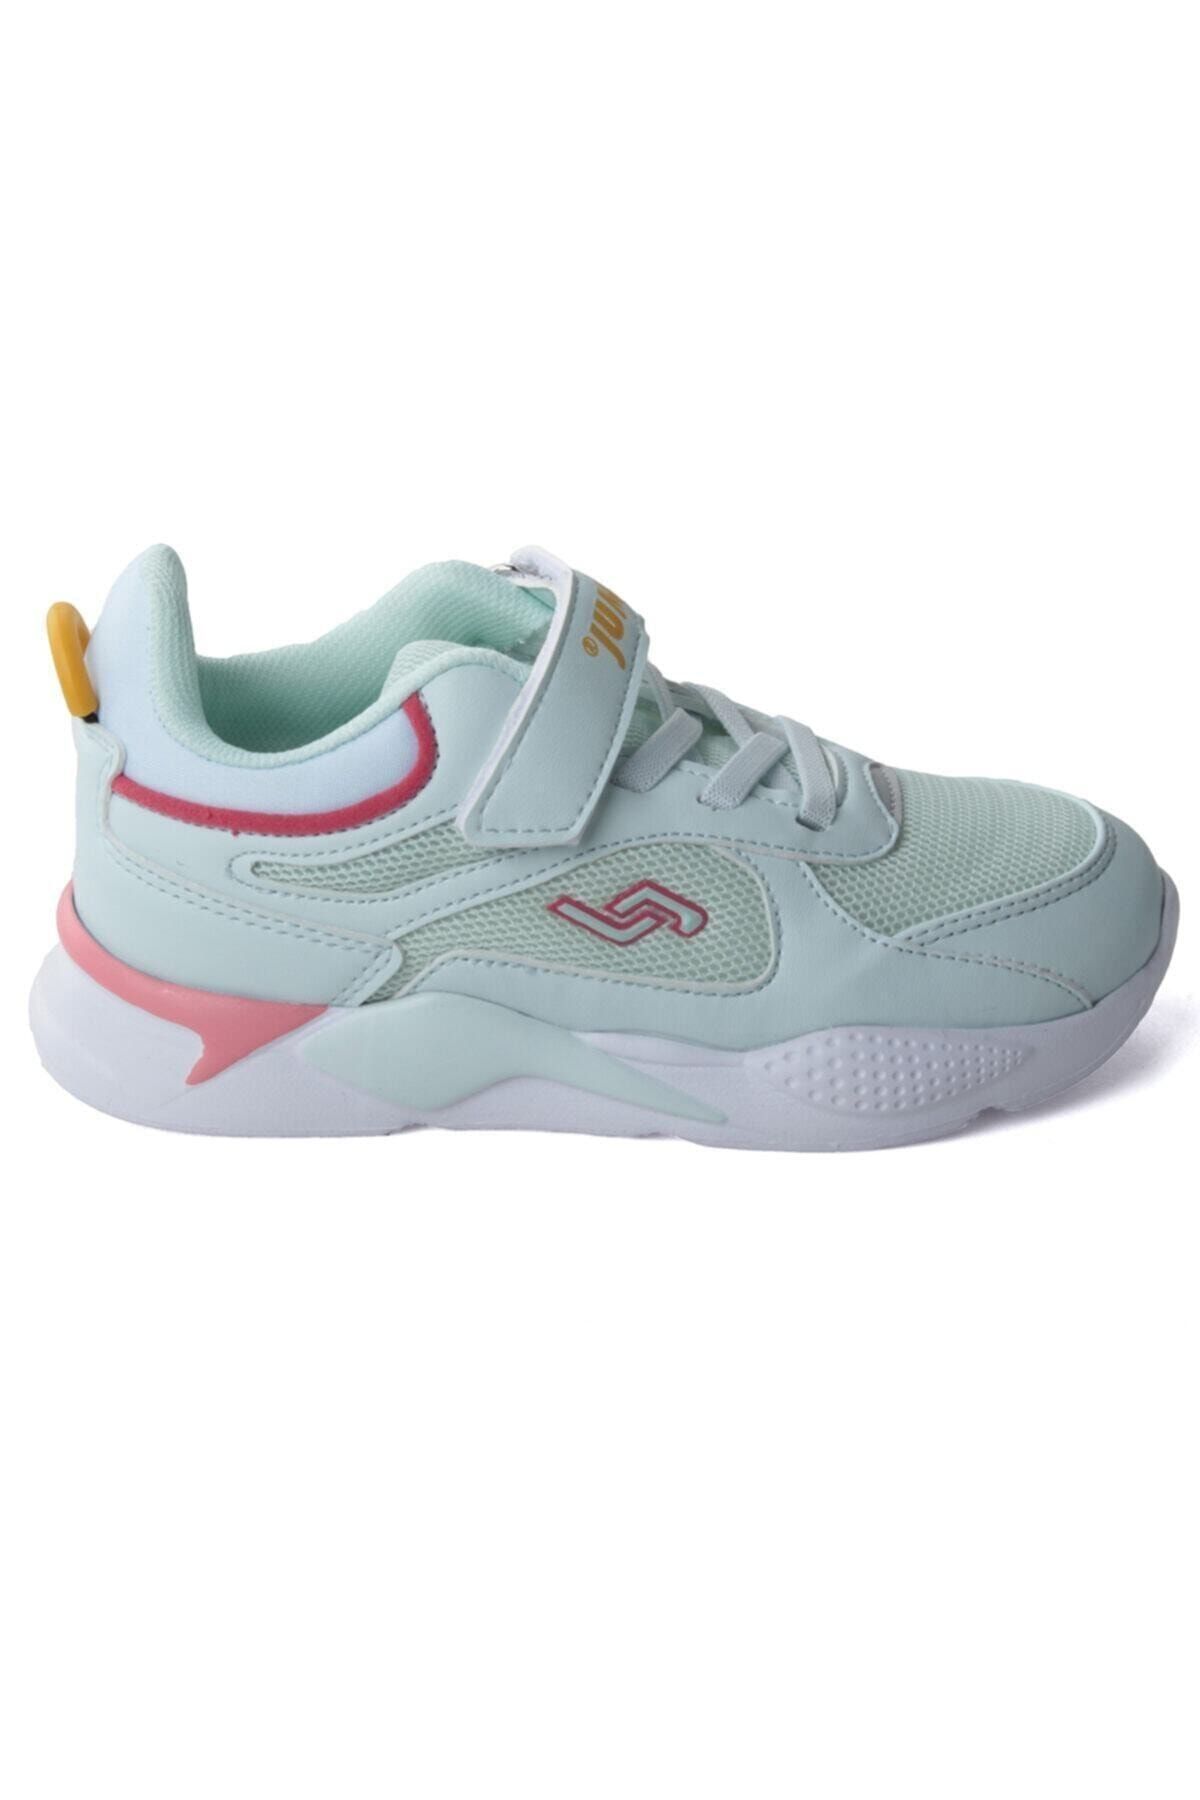 Jump 24931 Mint Yeşili - Somon Pembe - Sarı Kız Çocuk Yazlık Günlük Yürüyüş Sneaker Spor Ayakkabı